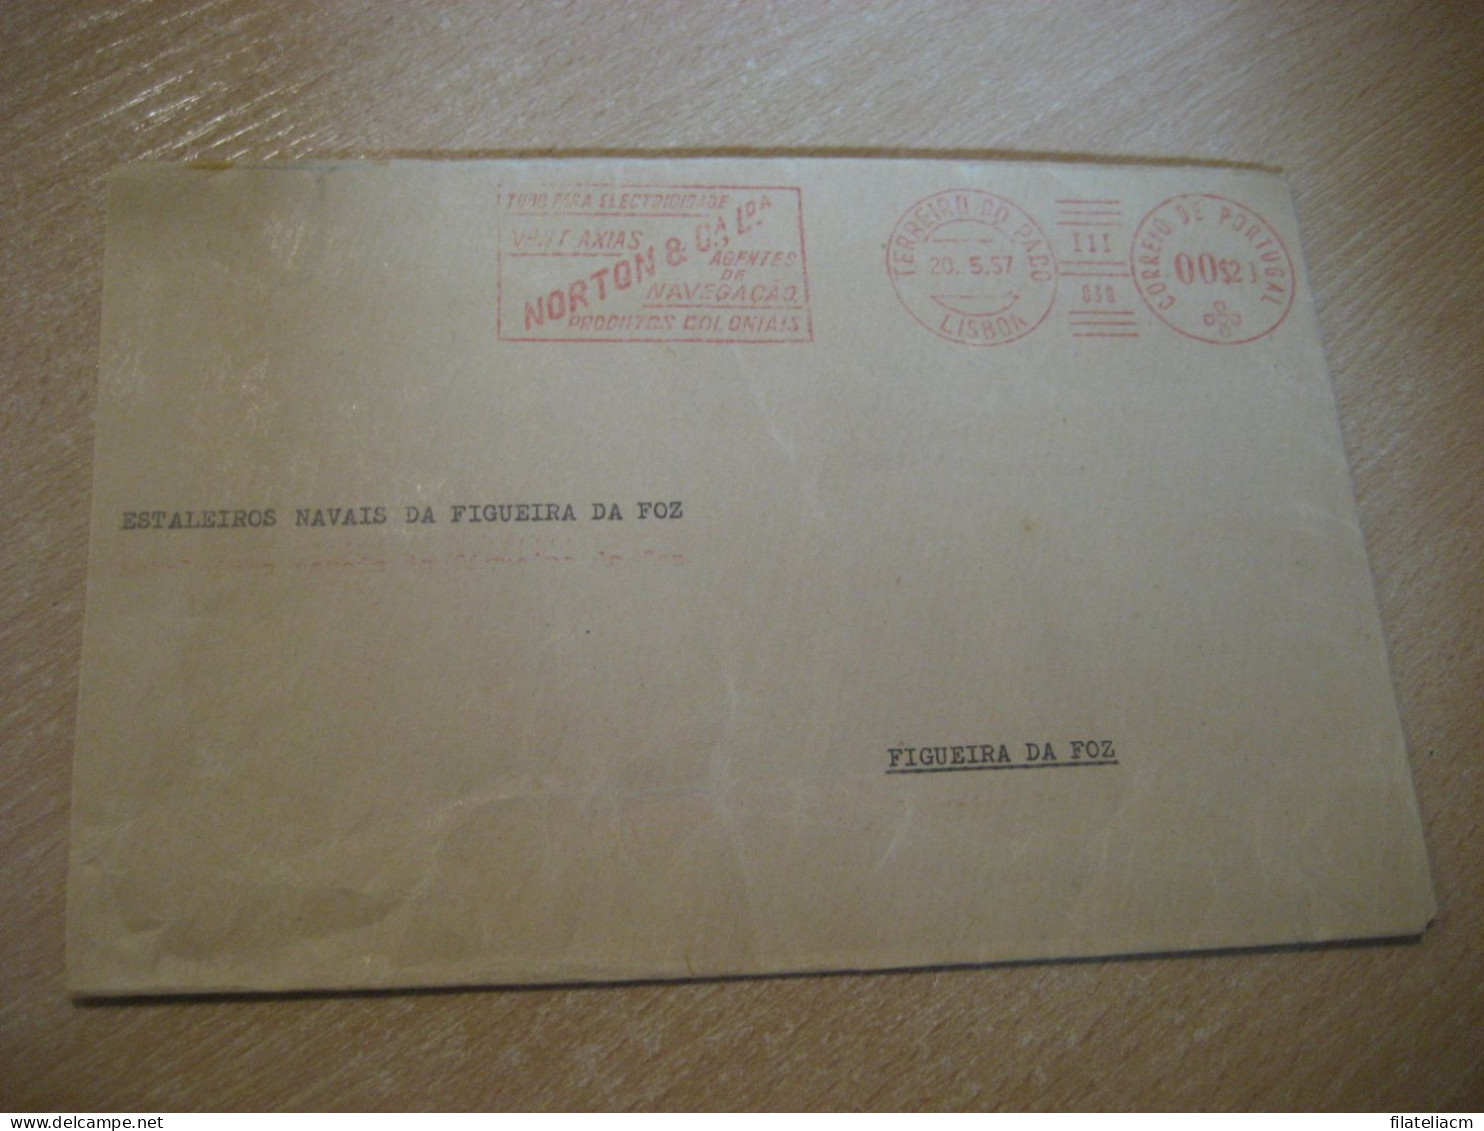 LISBOA 1957 To Figueira Da Foz Norton Agentes Navegaçao Produtos Coloniales Meter Mail Cancel Cover PORTUGAL - Covers & Documents